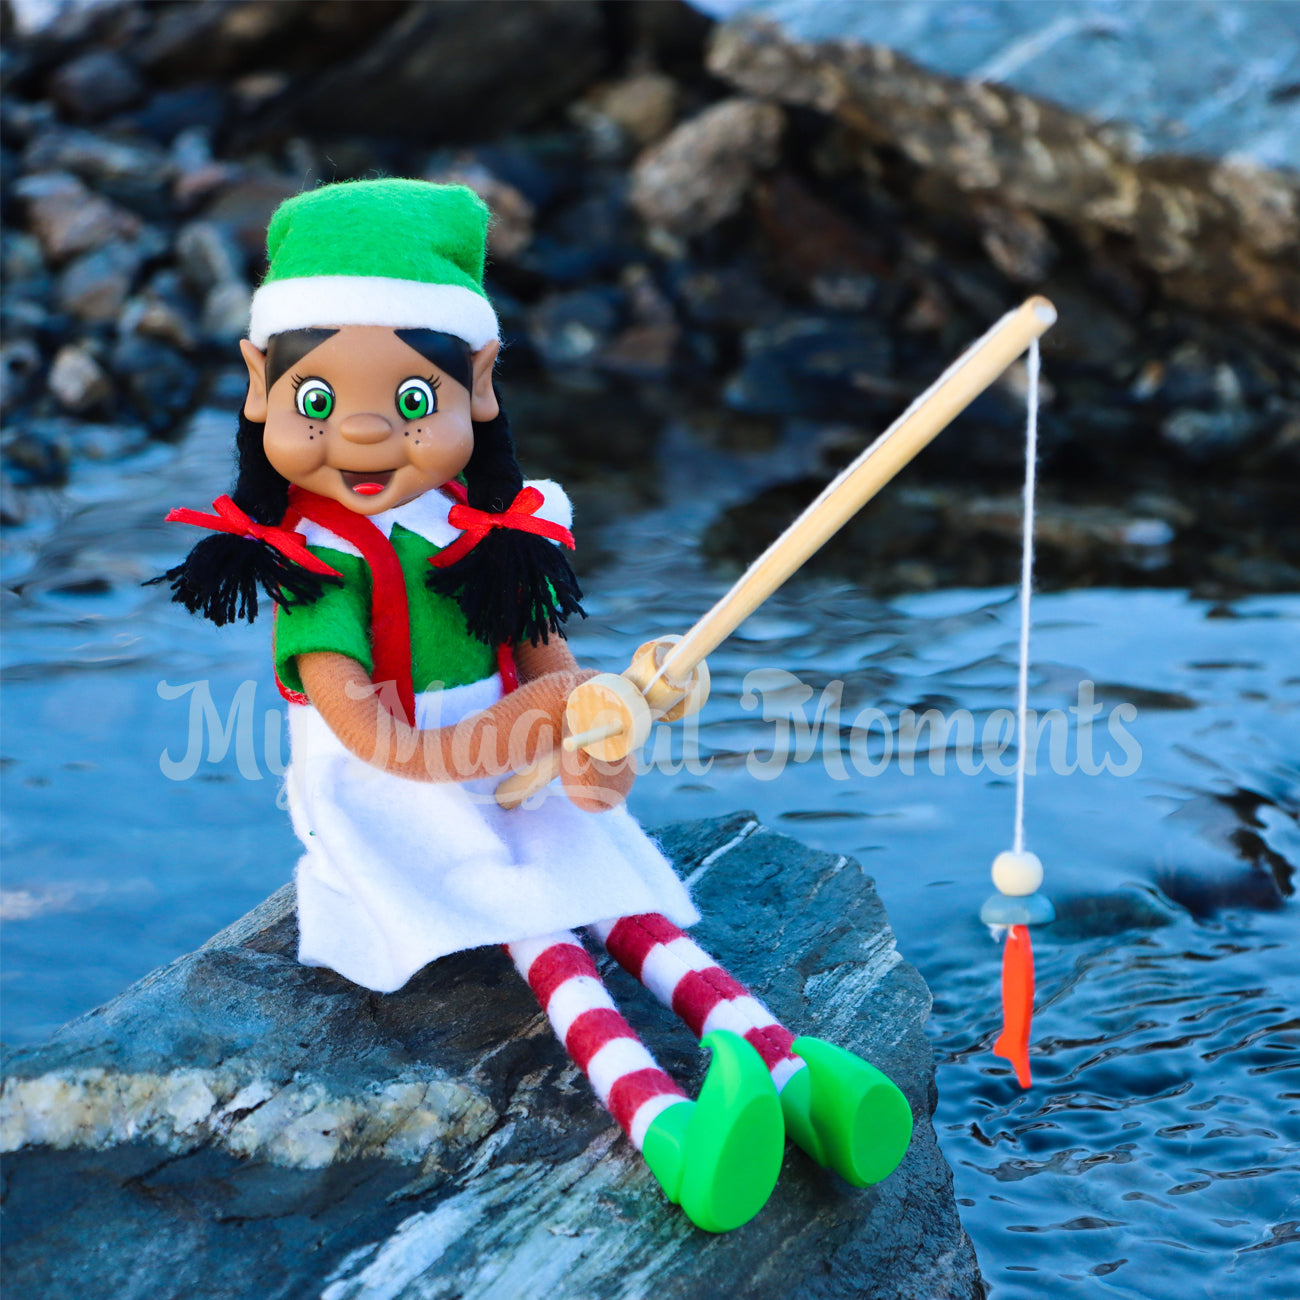 Elf fishing in a lake